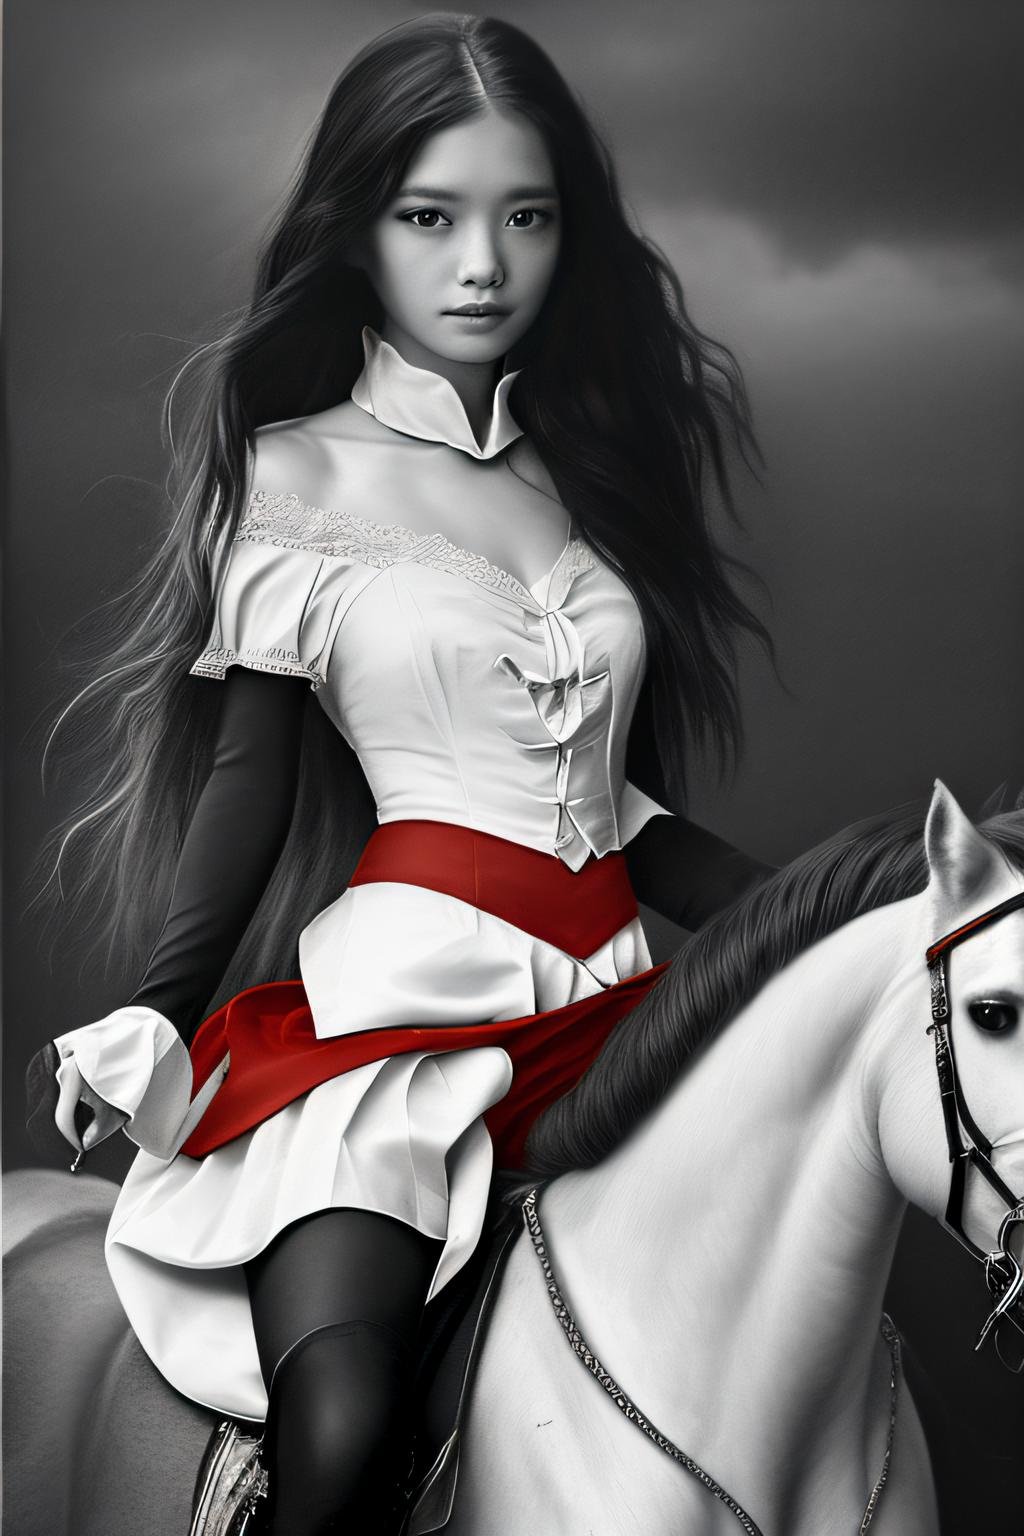 Dark Red Vampire image by Bujm